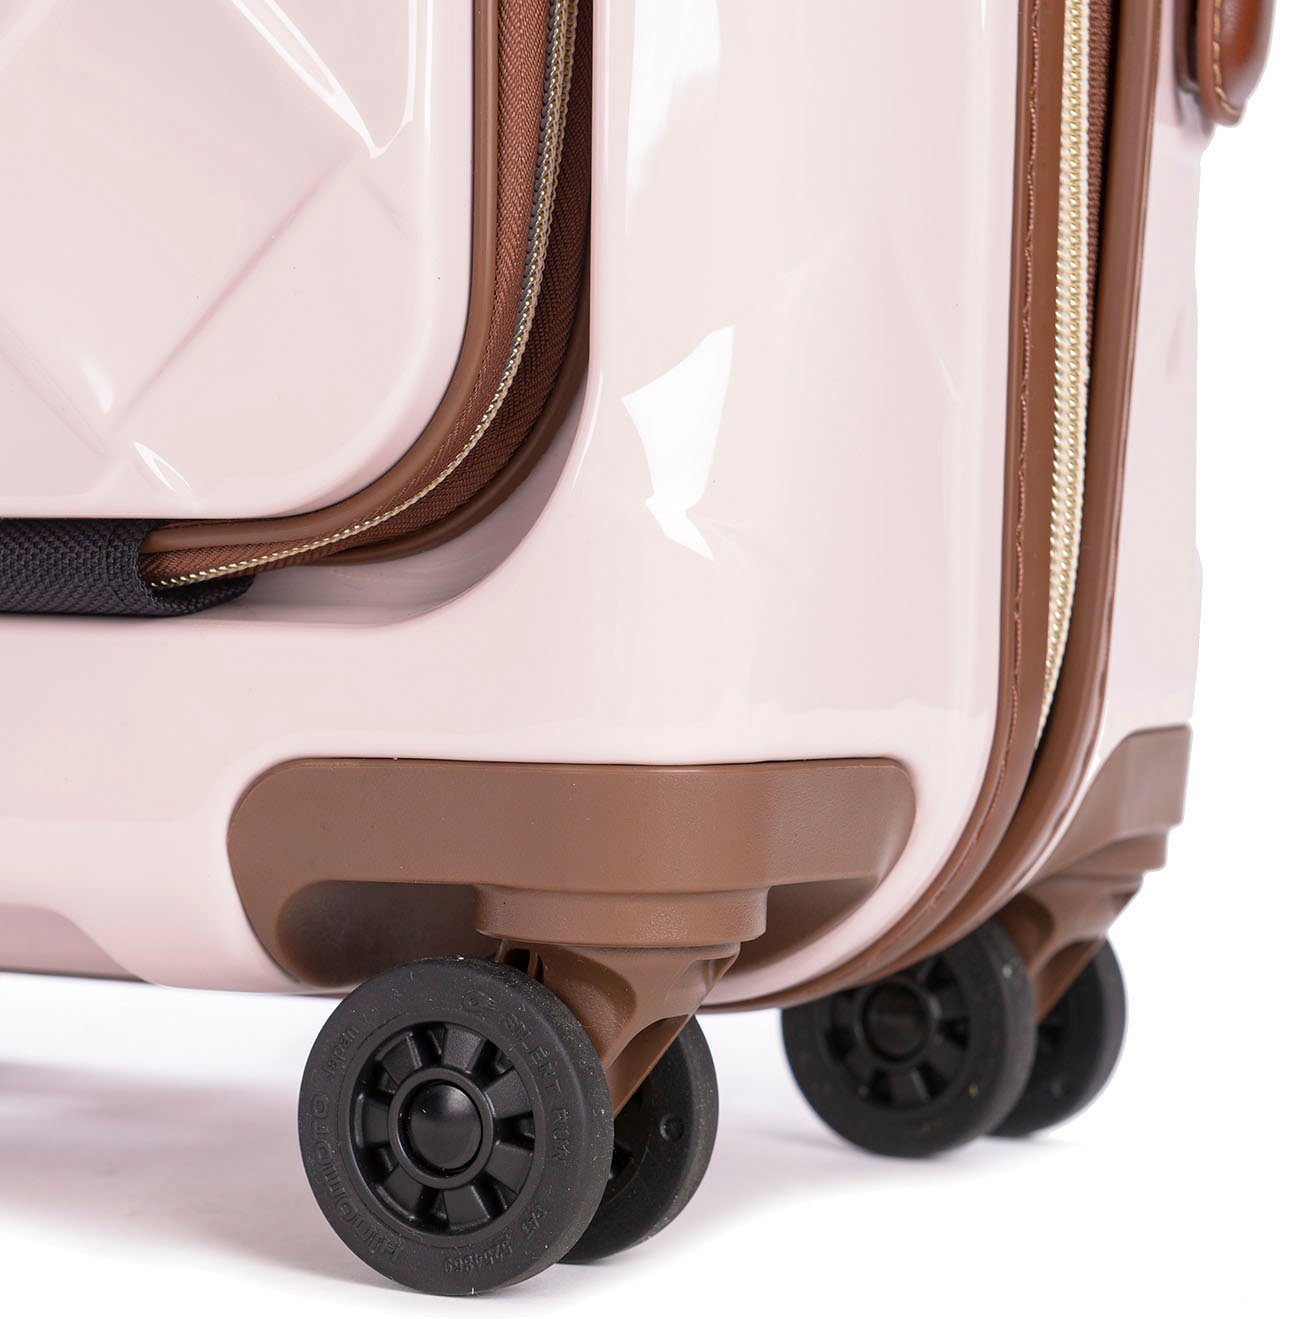 Stratic Hartschalen-Trolley Leather&More 4 mit S Laptopfach rose, mit Rollen, NFC-Chip; Vortasche